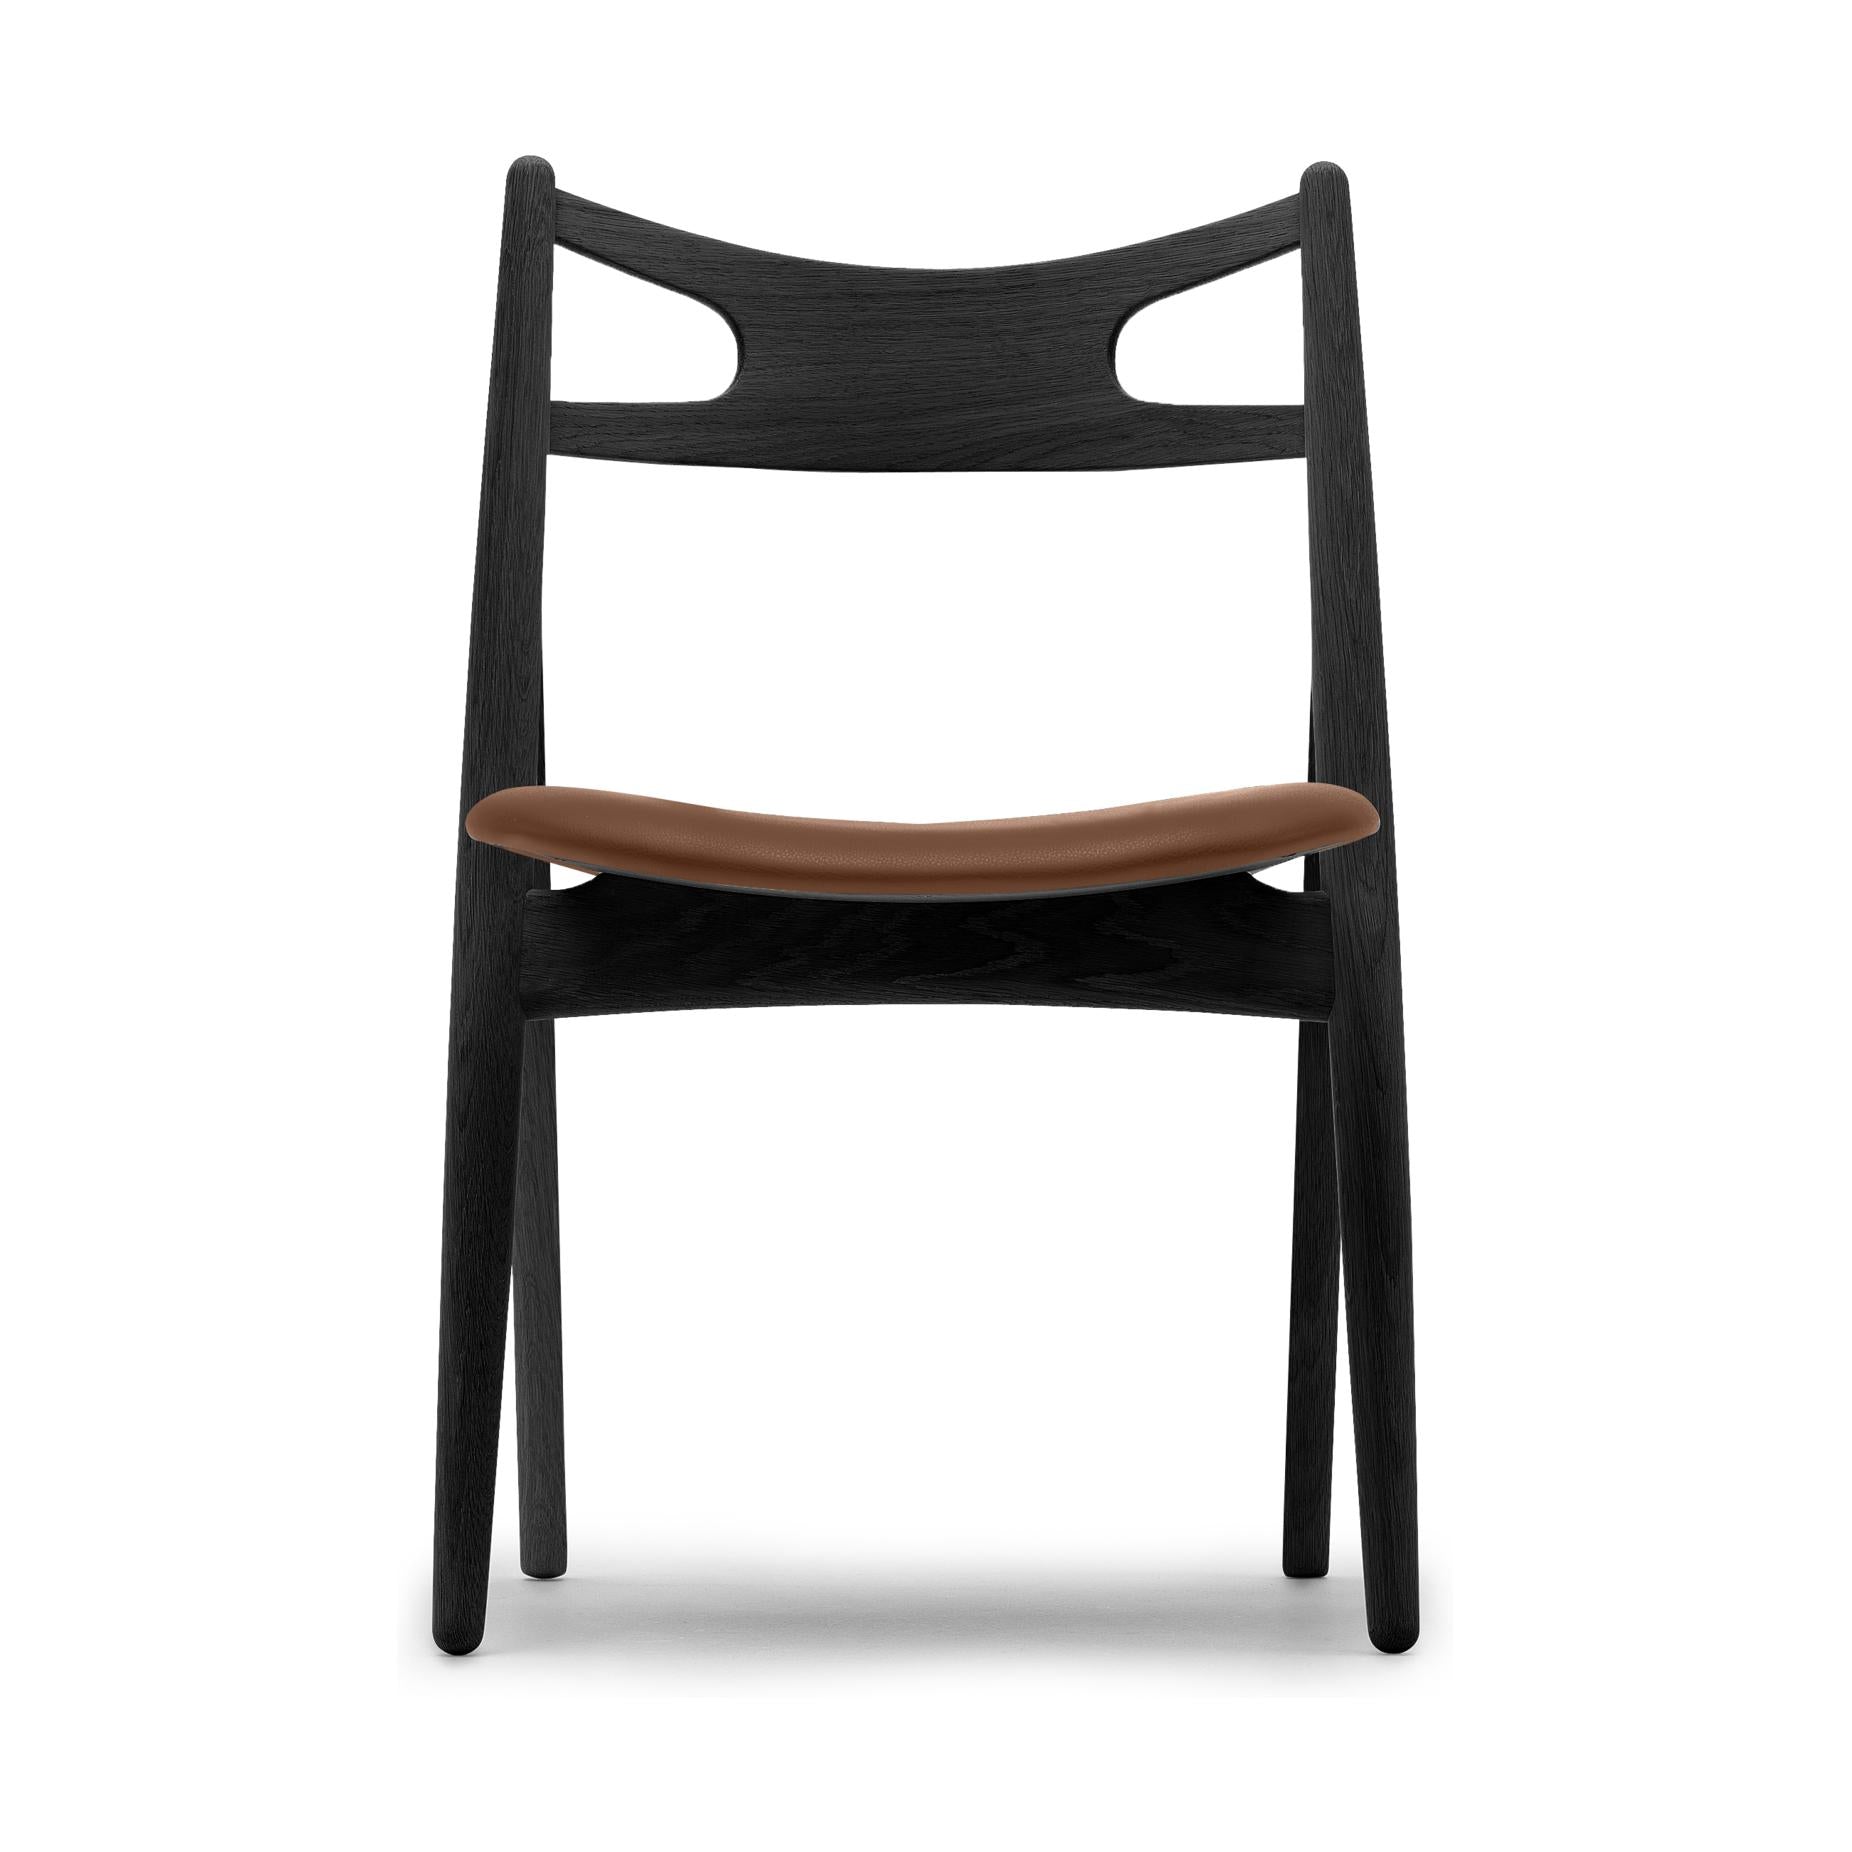 Carl Hansen CH29 P chaise, chêne coloré / cuir marron